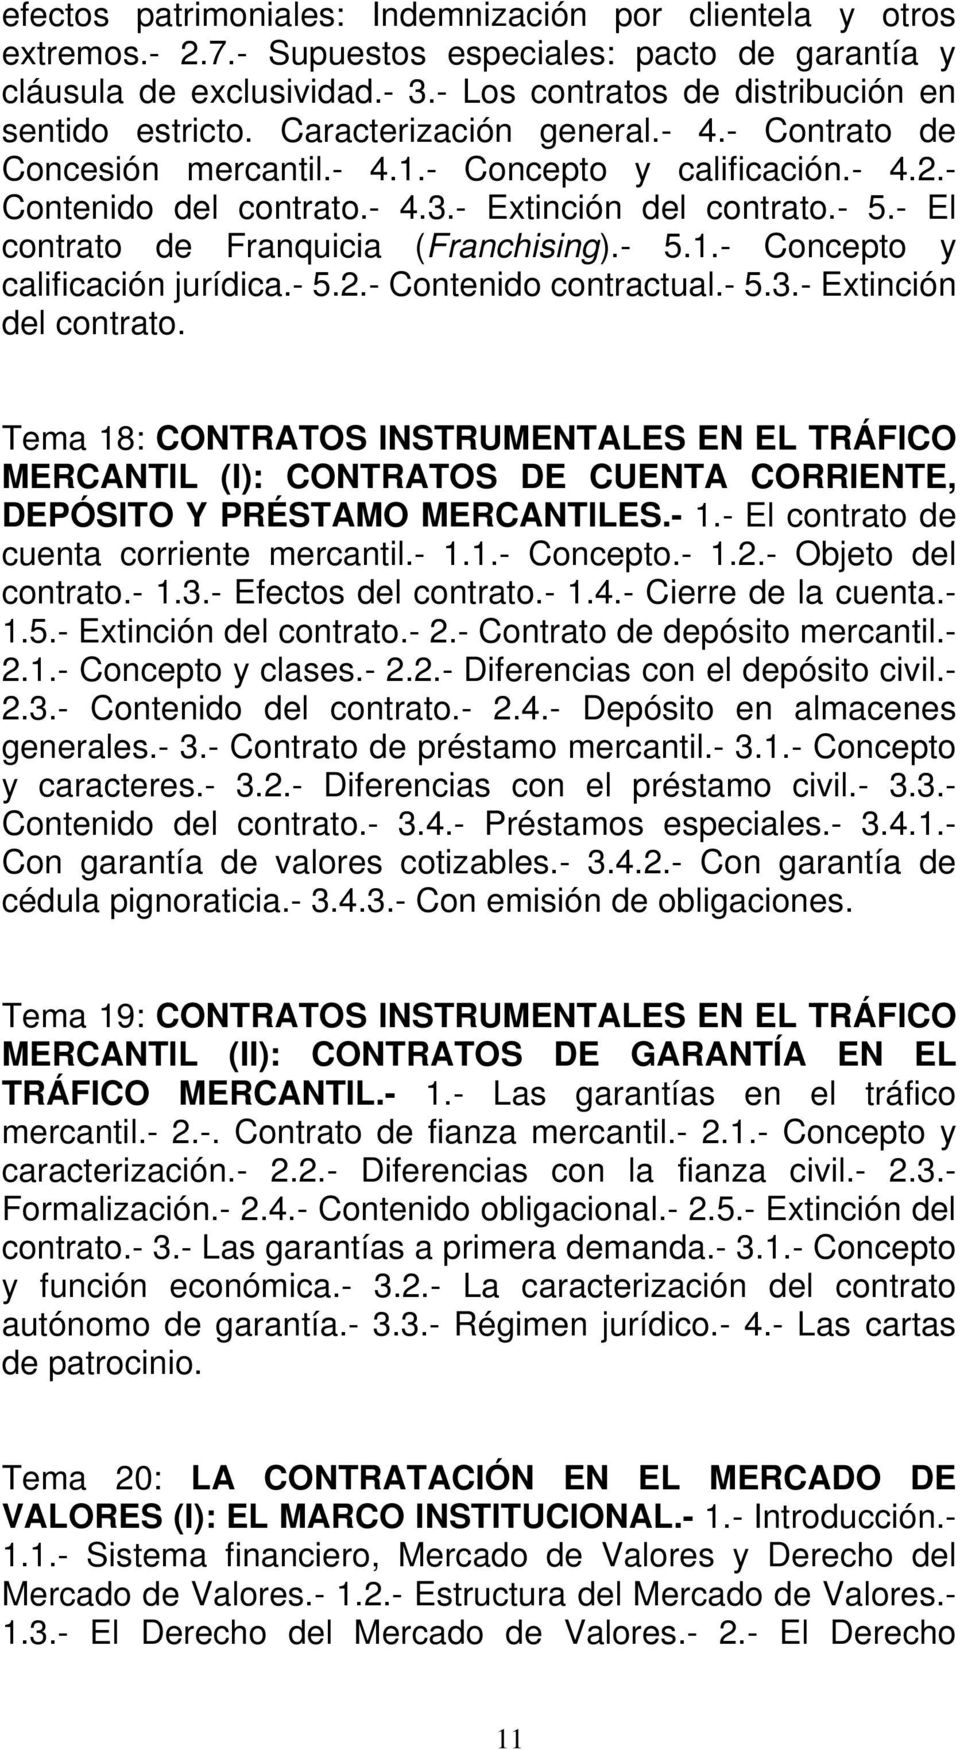 - El contrato de Franquicia (Franchising).- 5.1.- Concepto y calificación jurídica.- 5.2.- Contenido contractual.- 5.3.- Extinción del contrato.